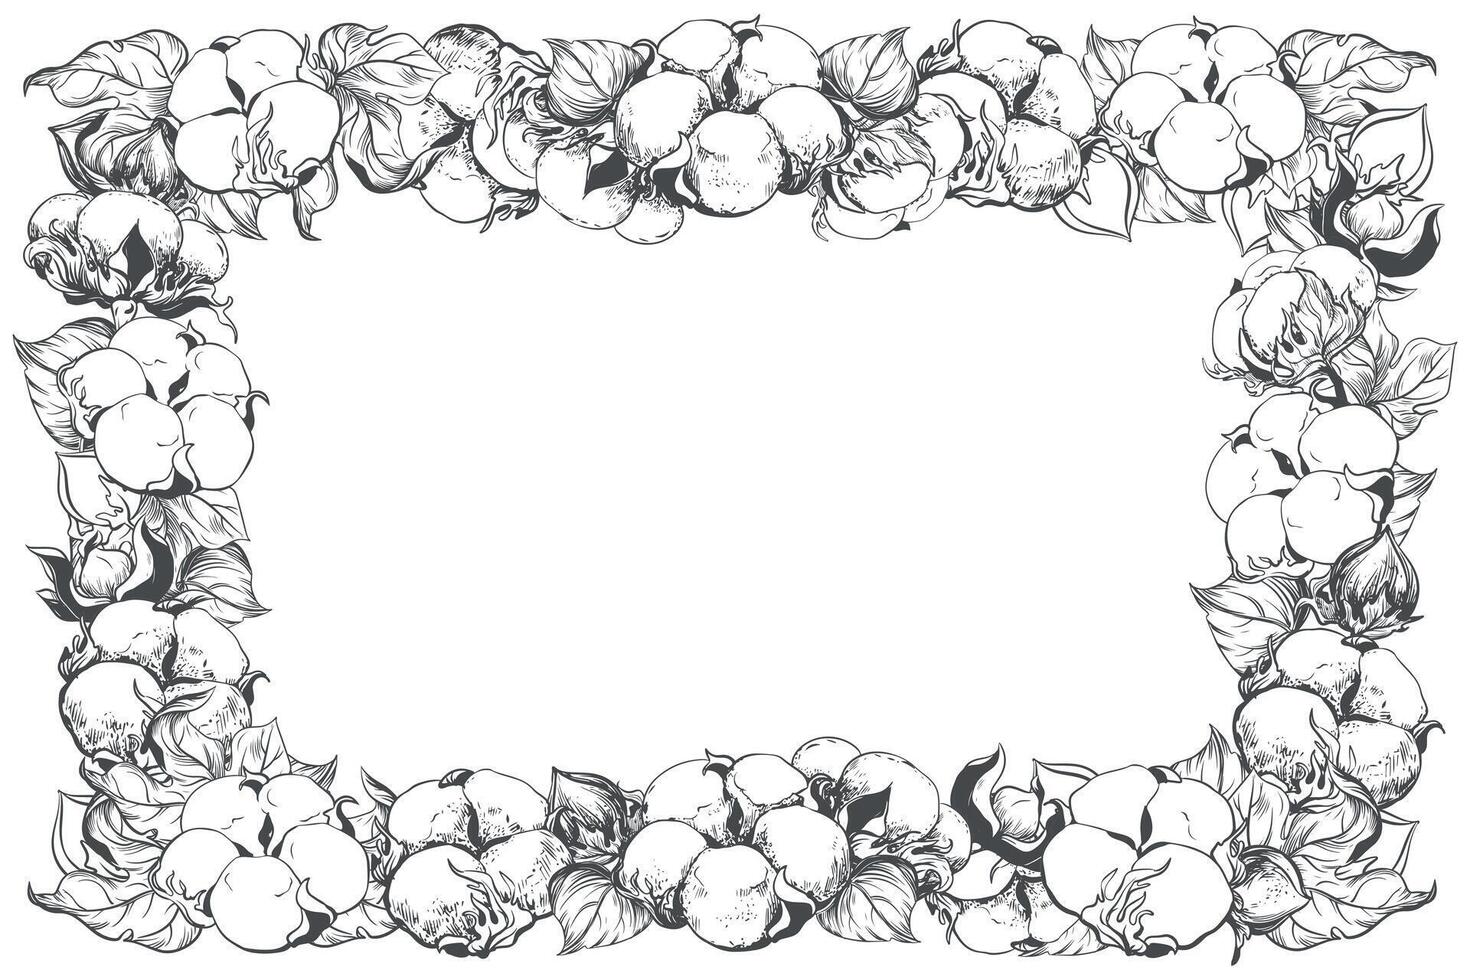 rechthoekig horizontaal kader met katoen bloemen en ruimte voor tekst. lineair schetsen van wit katoen ballen, bladeren en takken. retro inkt illustratie. ontwerp voor label, label, bruiloft uitnodiging. vector